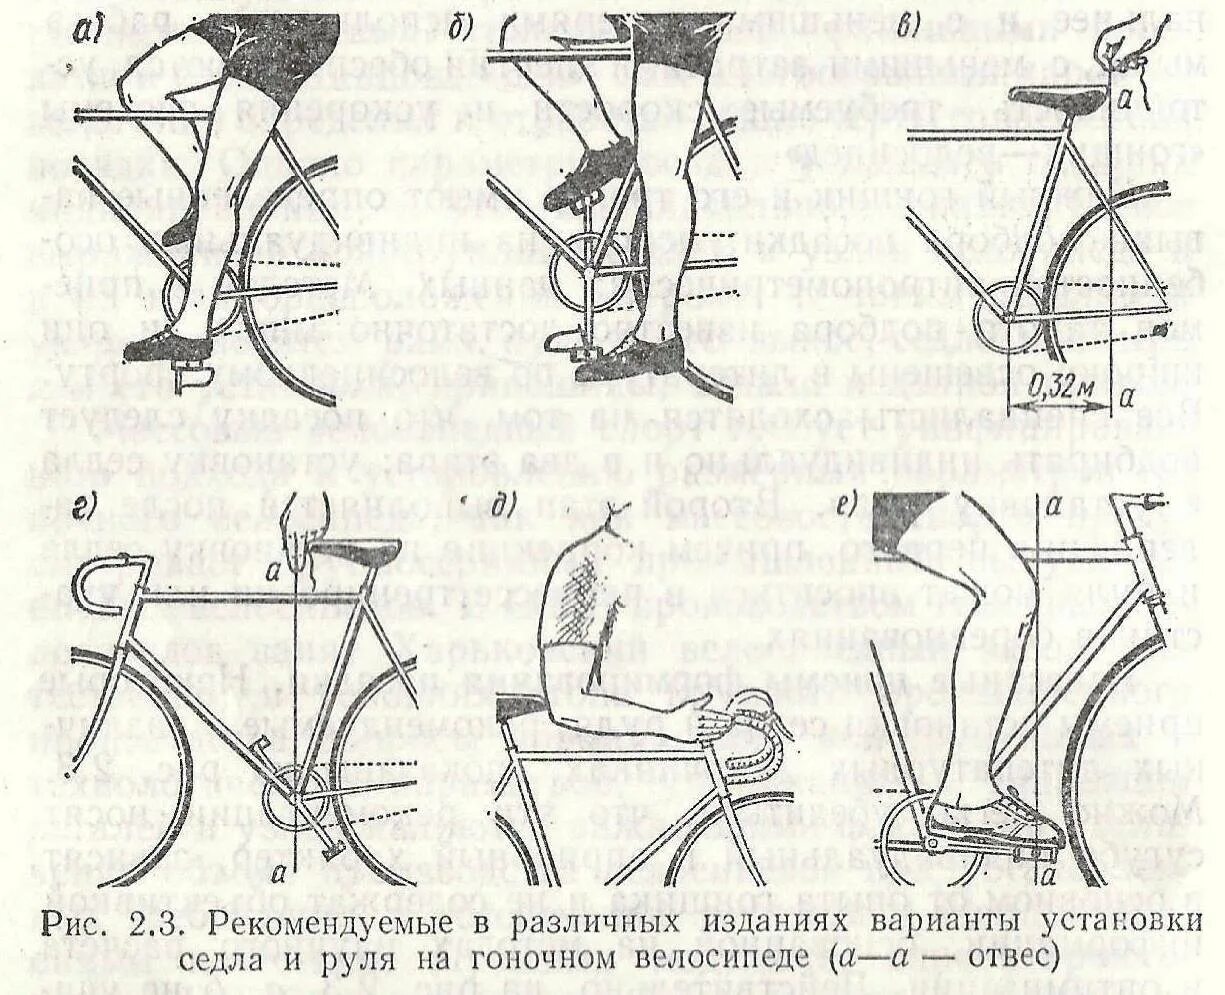 Колено после велосипеда. Шоссейный велосипед посадка схема. Регулировка положения руля велосипеда по высоте. Правильное расположение велосипедного седла. Регулировка высоты седла горного велосипеда.